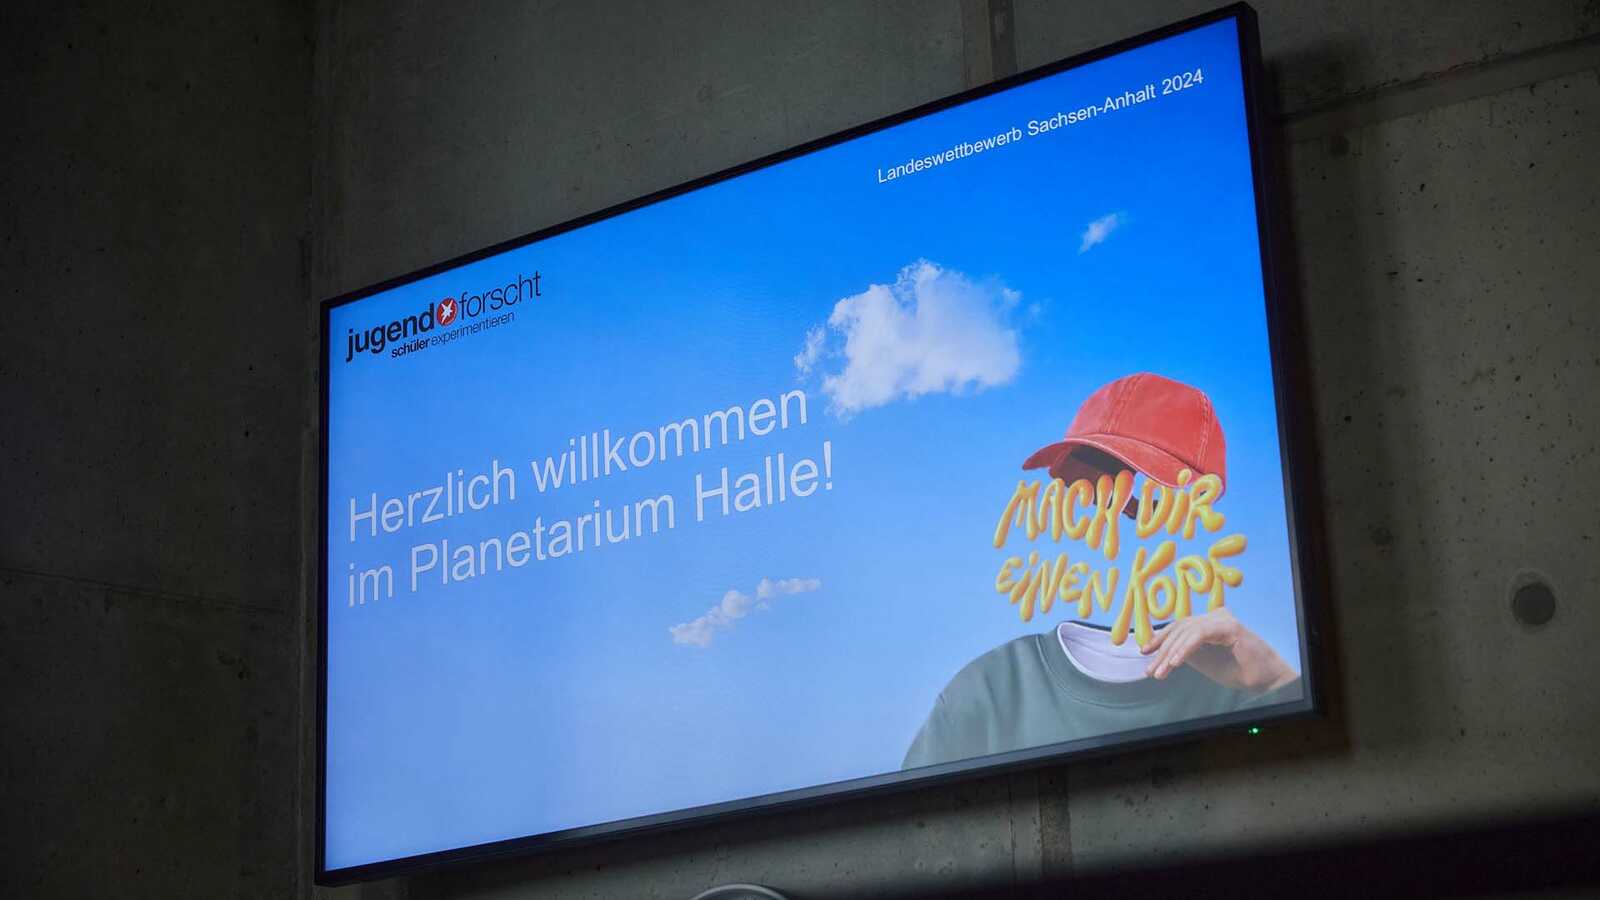 Auf einem Monitor steht "Herzlich Willkommen im Planetarium Halle"